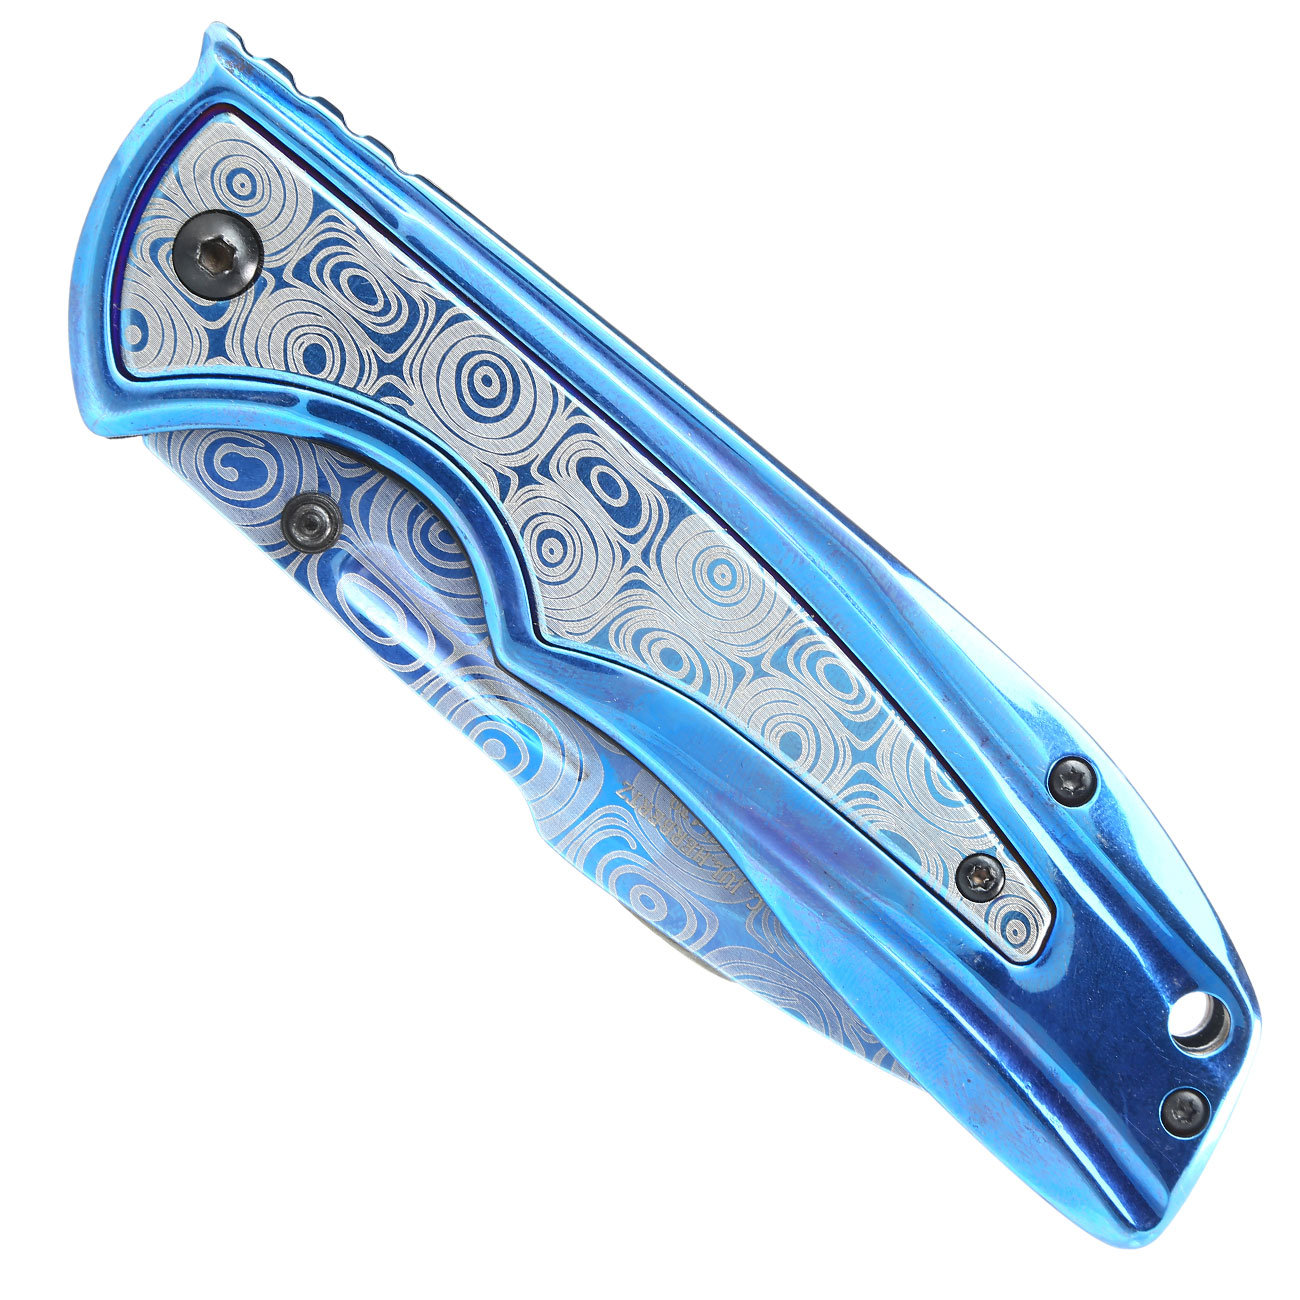 Herbertz Einhandmesser Damastoptik blau mit Gürtelclip Bild 1